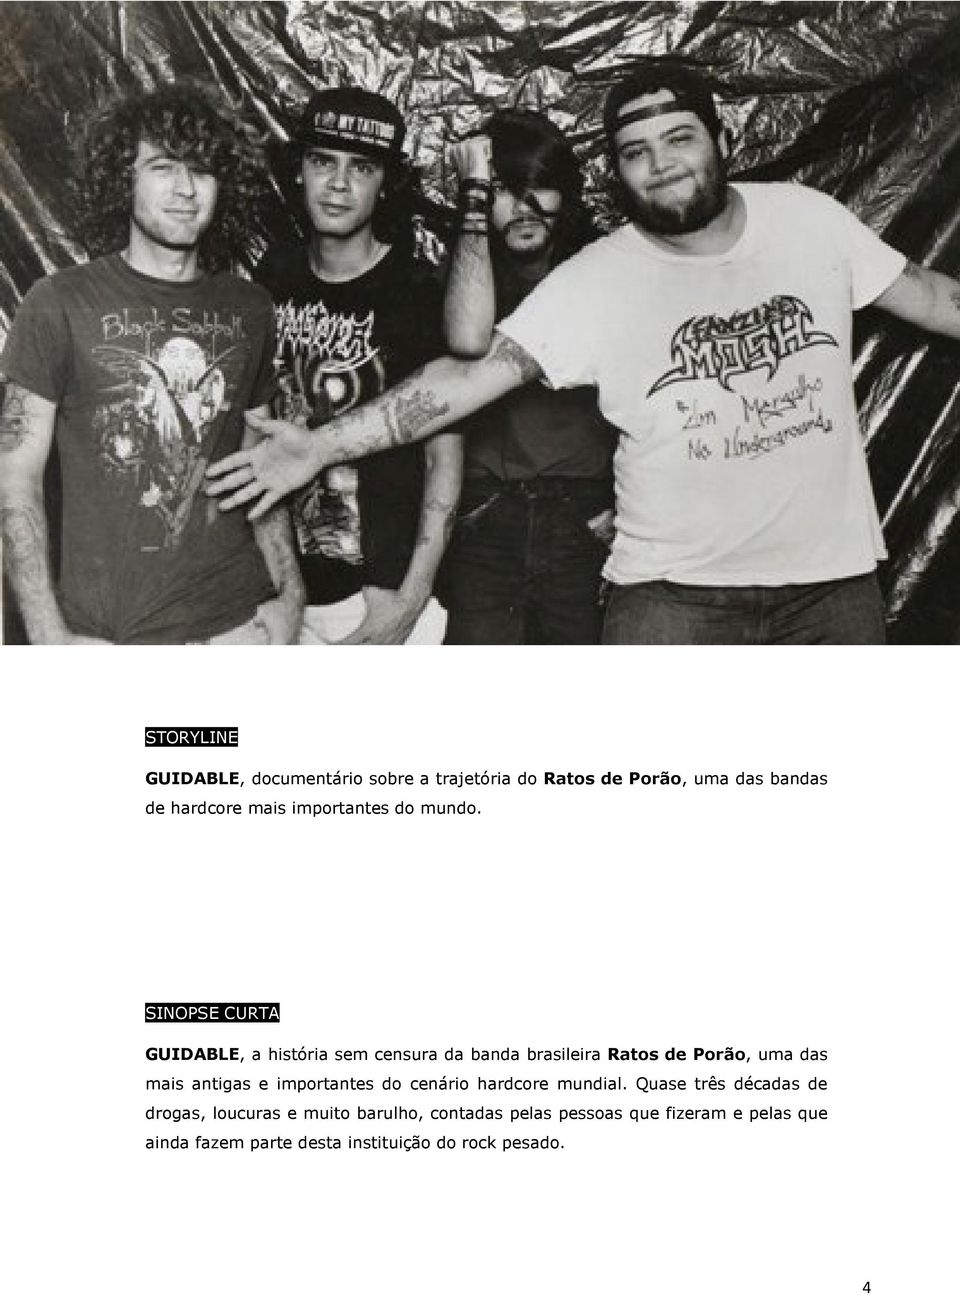 SINOPSE CURTA GUIDABLE, a história sem censura da banda brasileira Ratos de Porão, uma das mais antigas e